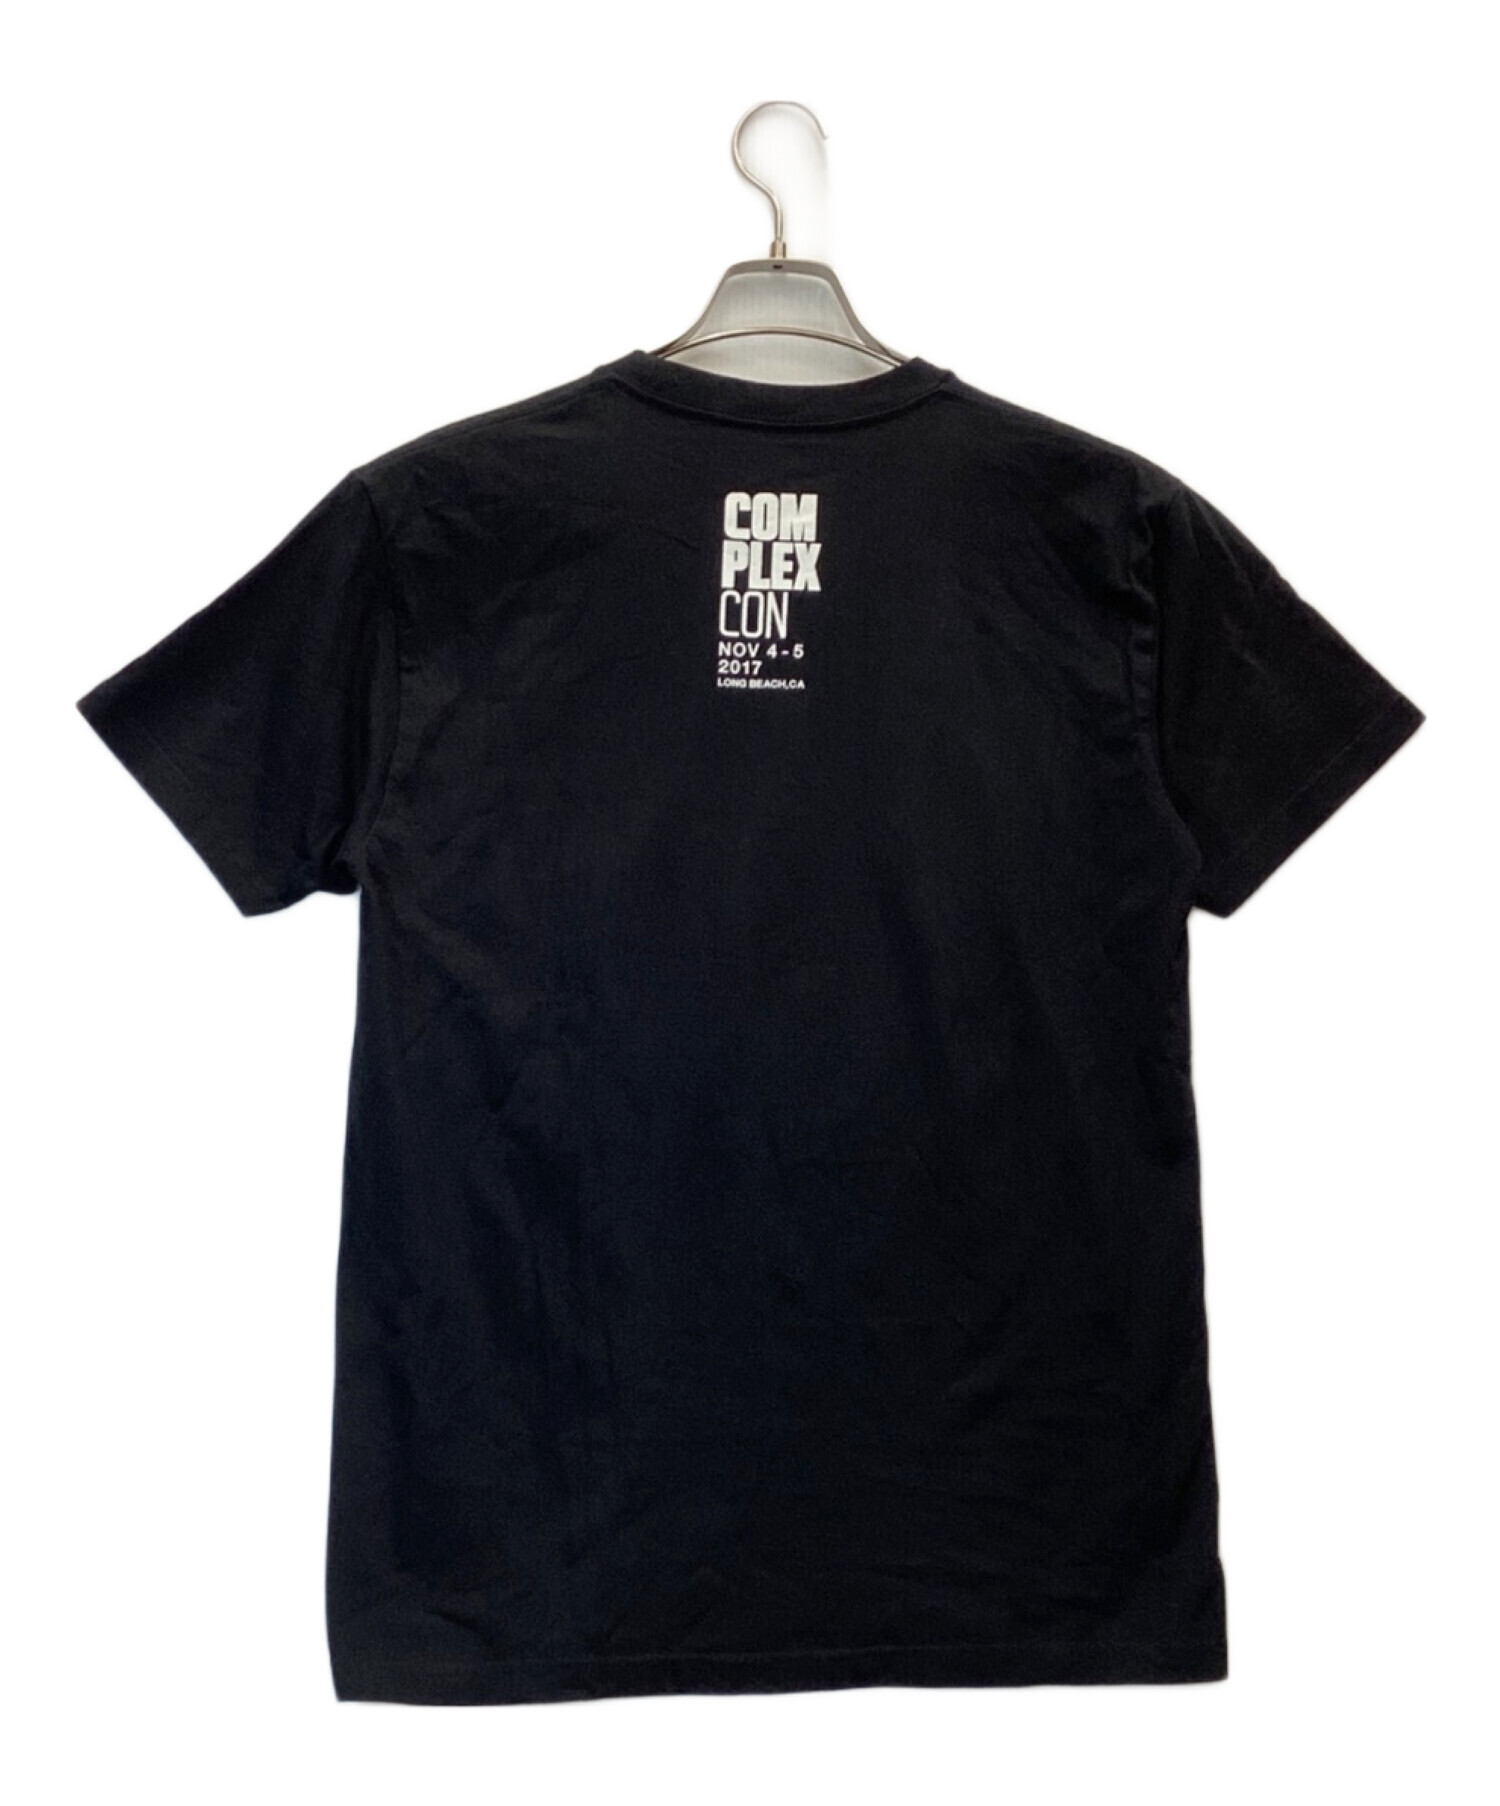 complexcon (コンプレックスコン) Takashi Murakami (タカシ ムラカミ) Tシャツ ブラック サイズ:M